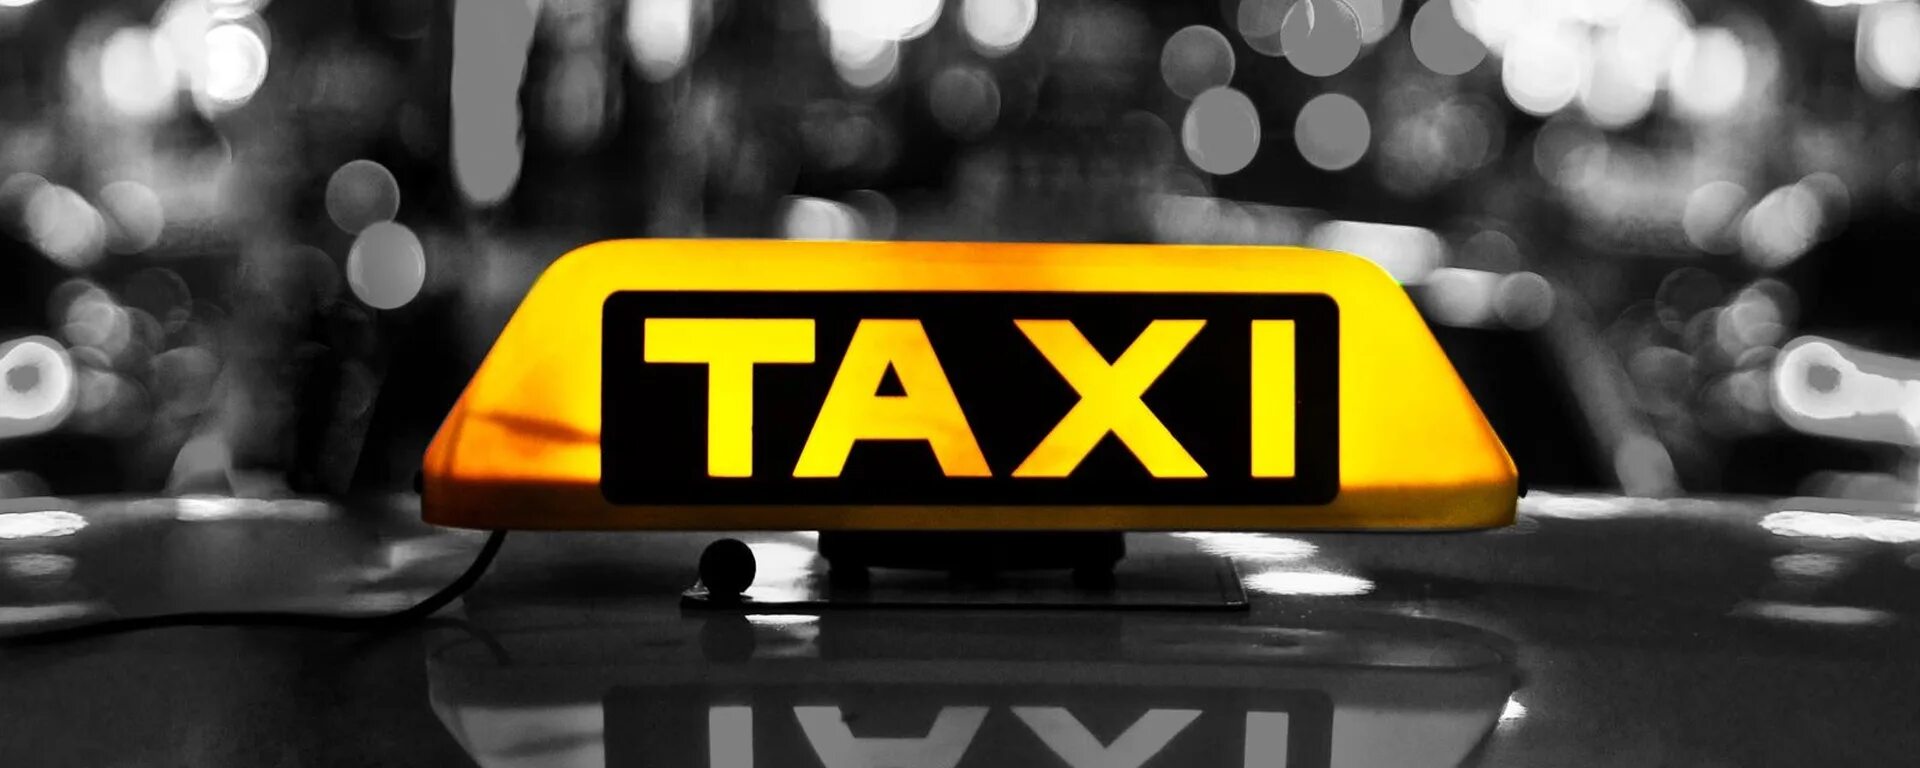 Way taxi. Визитка такси. Такси фон. Надпись такси. Баннер такси.